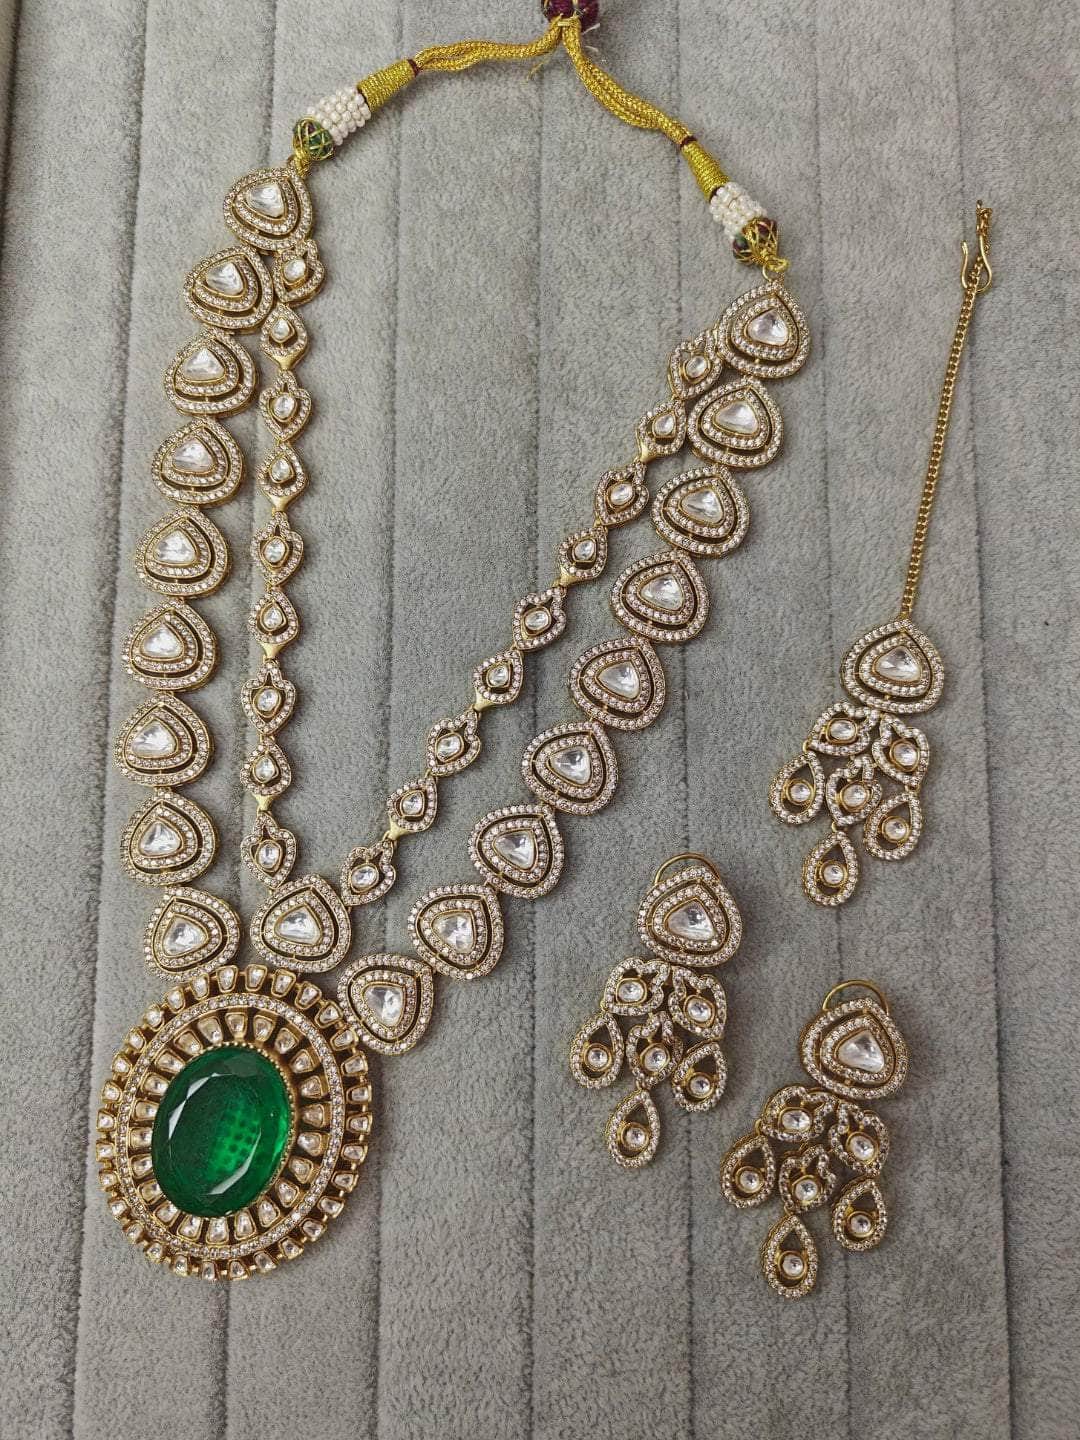 Ishhaara Premium Victorian Vintage Necklace Earrings Set